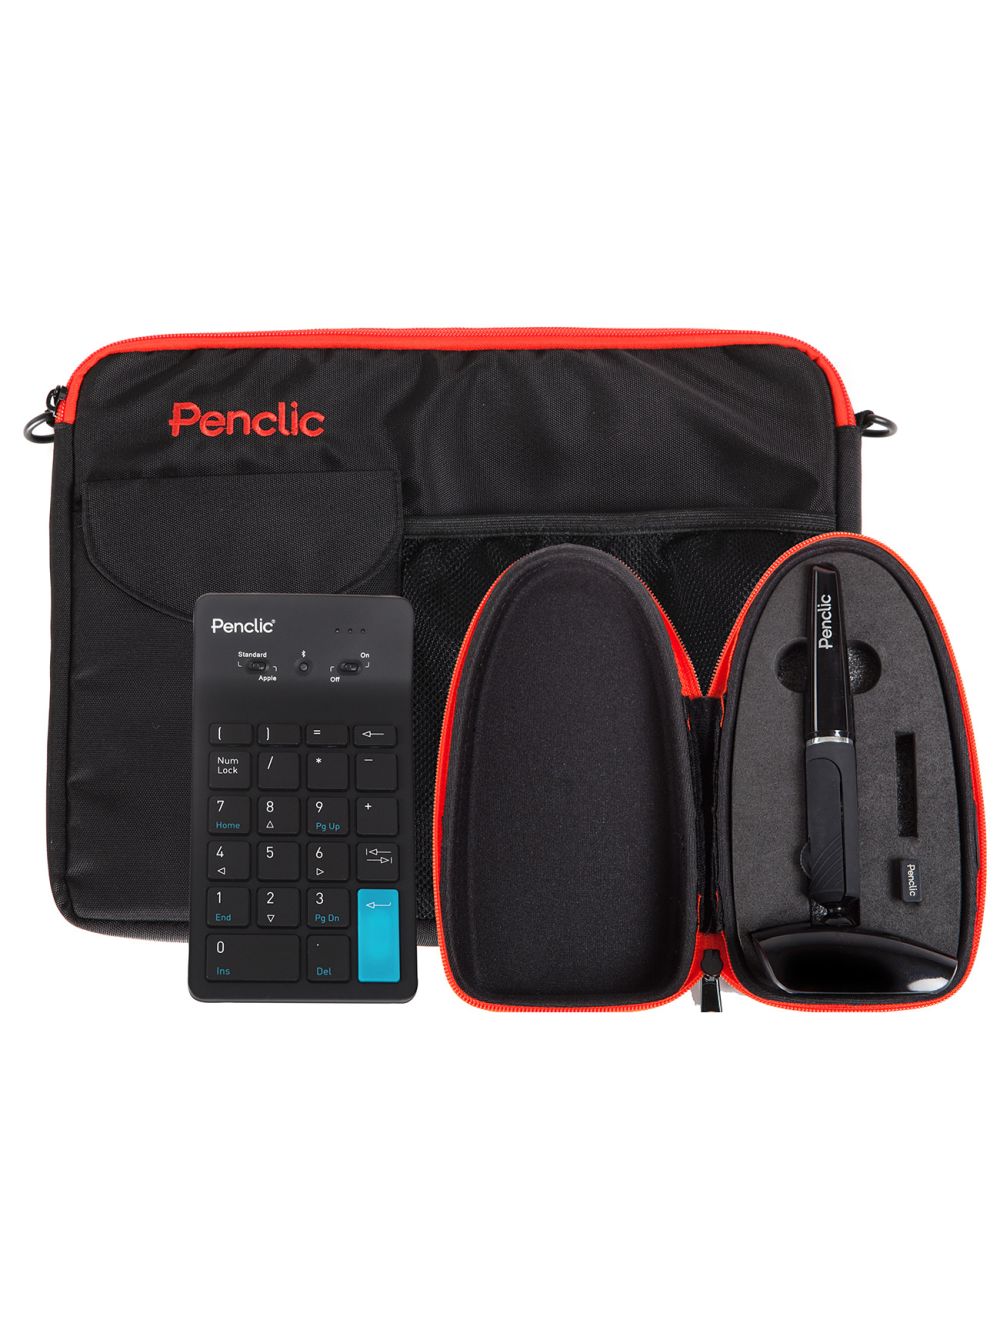 Penclic Accessory Bag - Keyboard, Keypad, Mouse